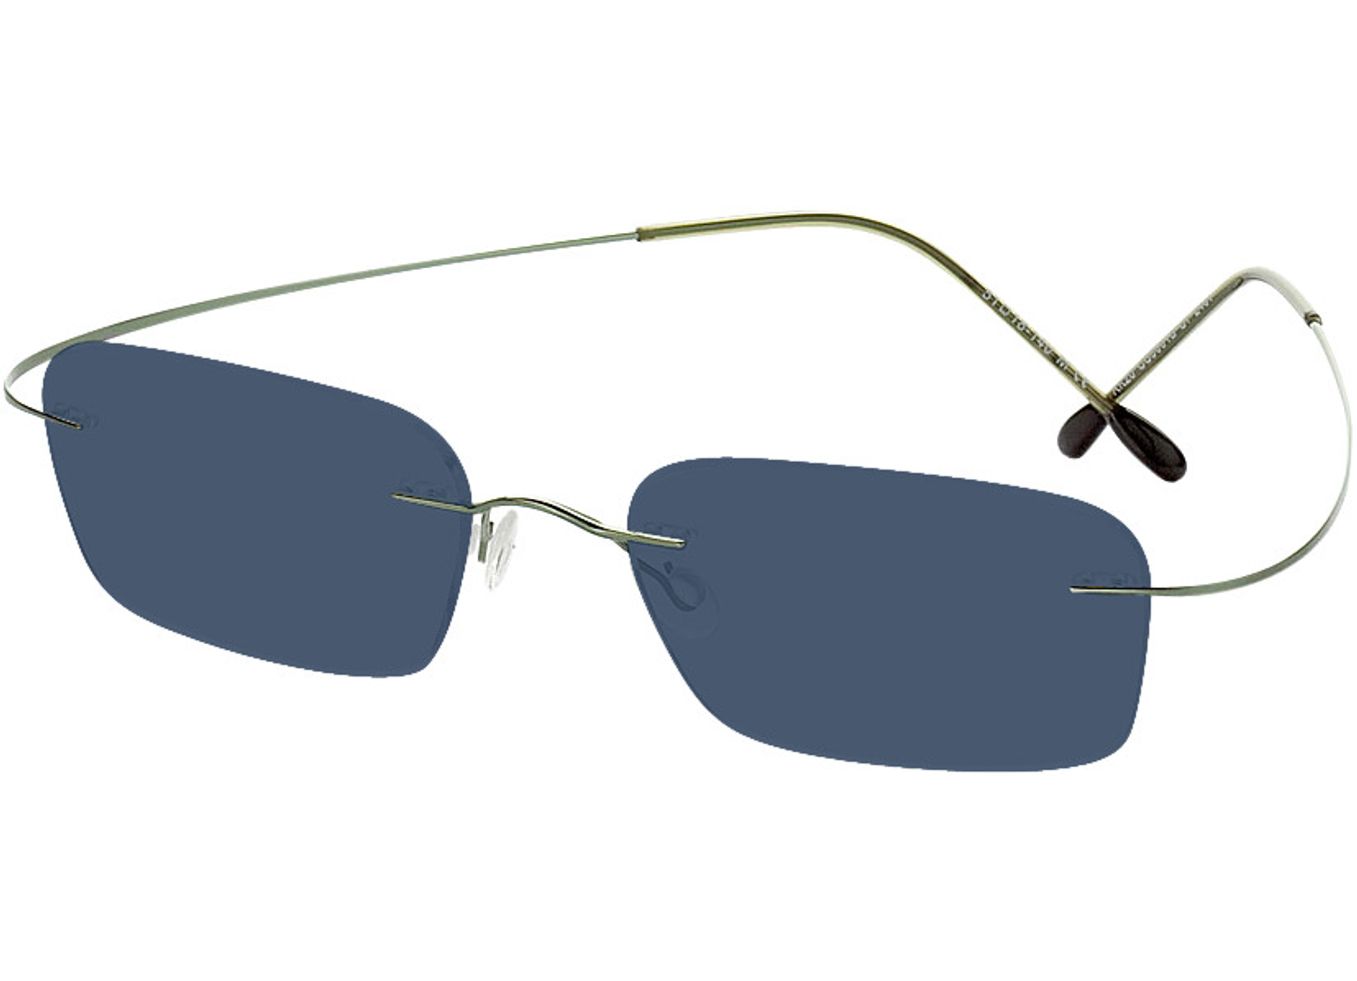 Mackay - grün Sonnenbrille mit Sehstärke, Randlos, Rechteckig von Brille24 Collection